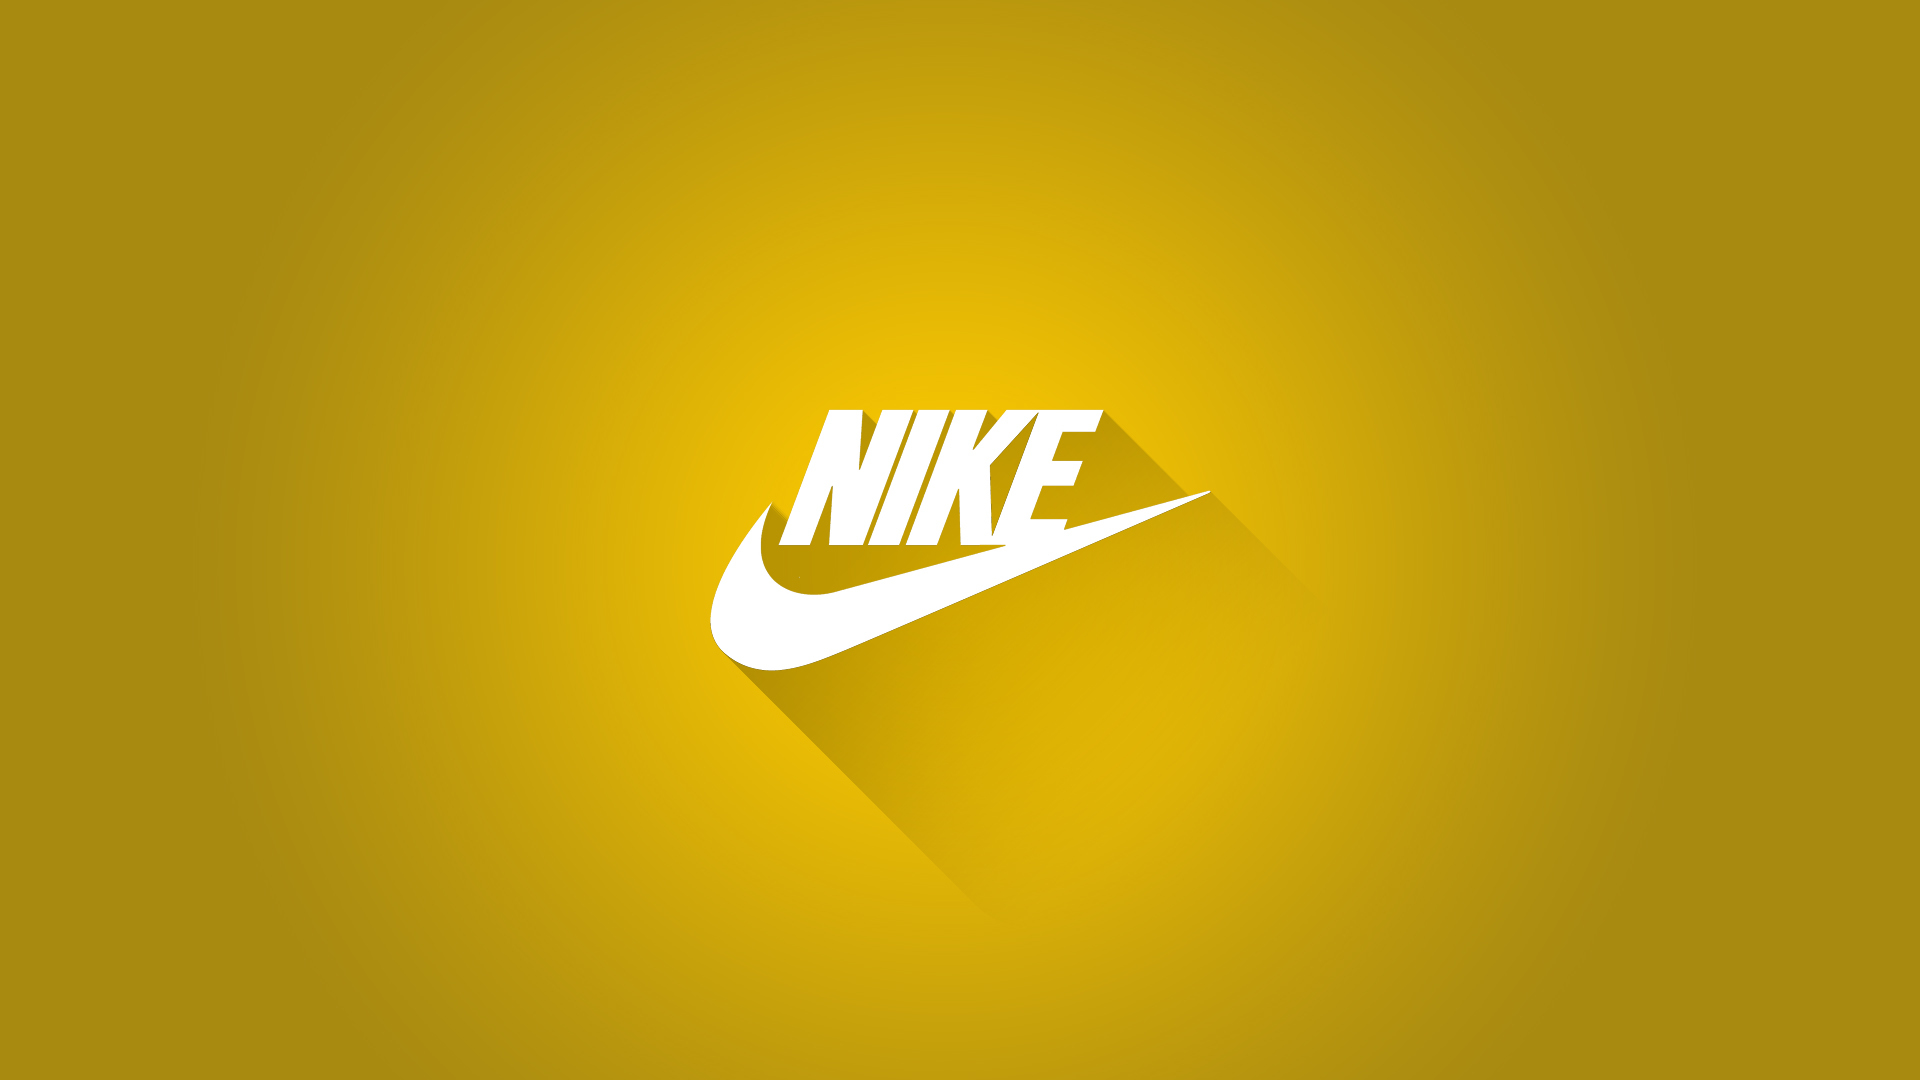 Nike 3D HD Wallpapers Free Download PixelsTalkNet